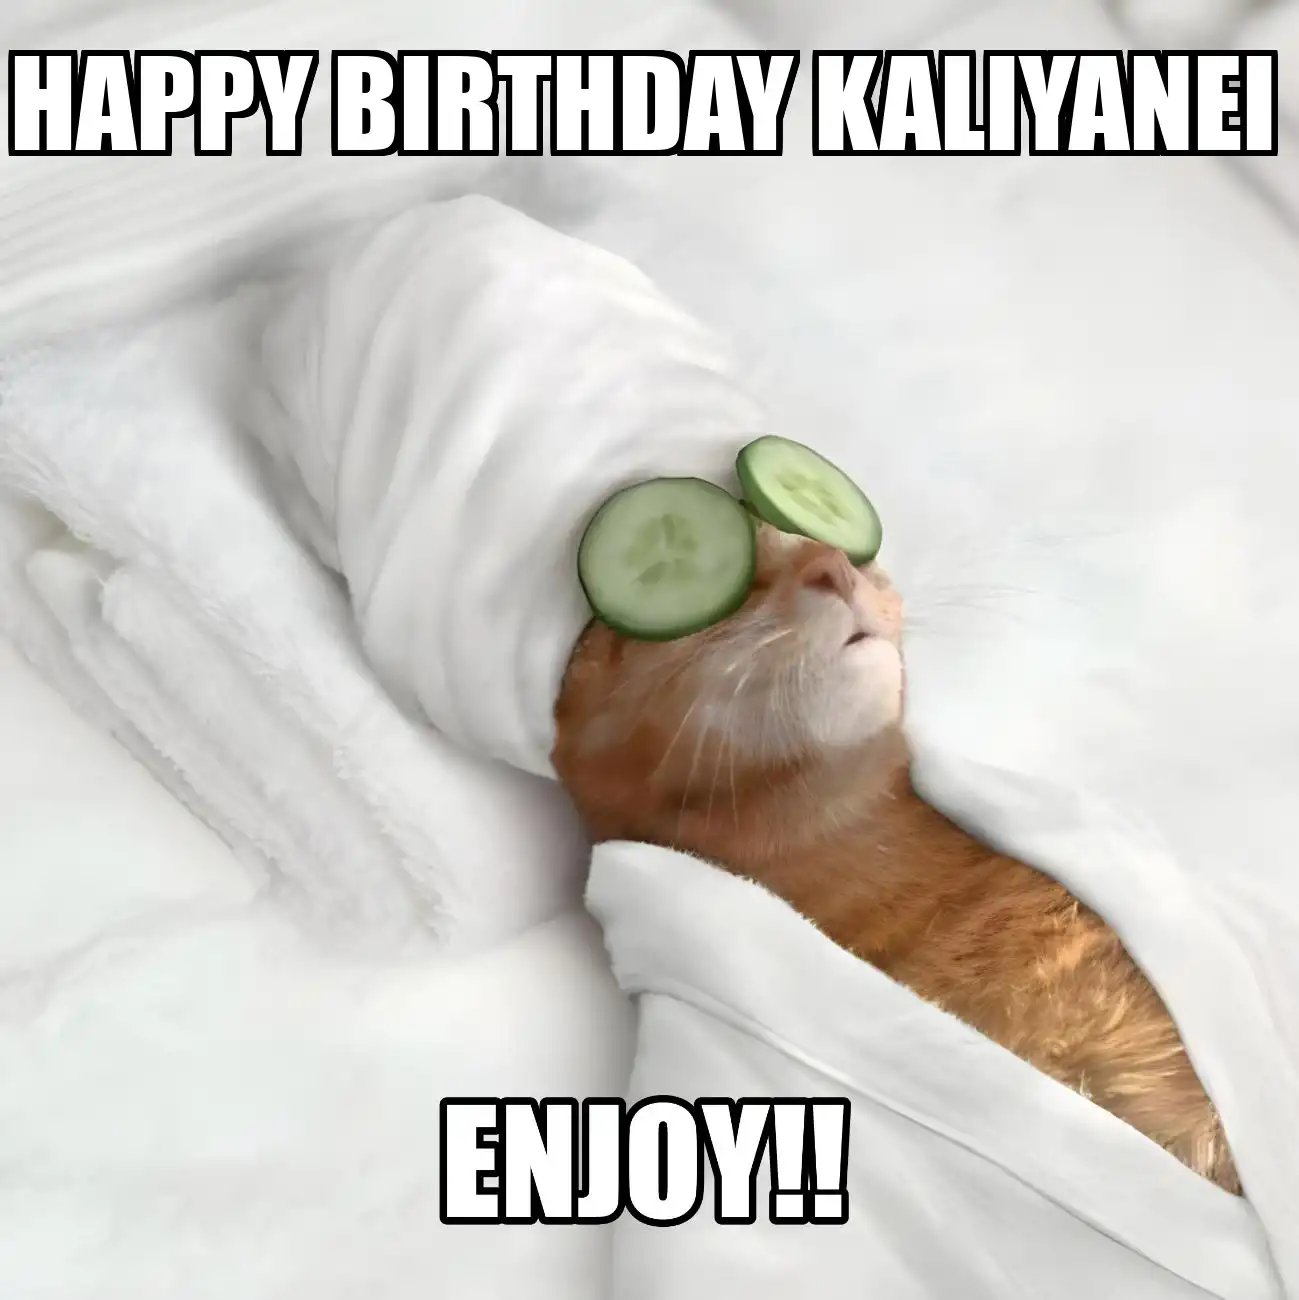 Happy Birthday Kaliyanei Enjoy Cat Meme